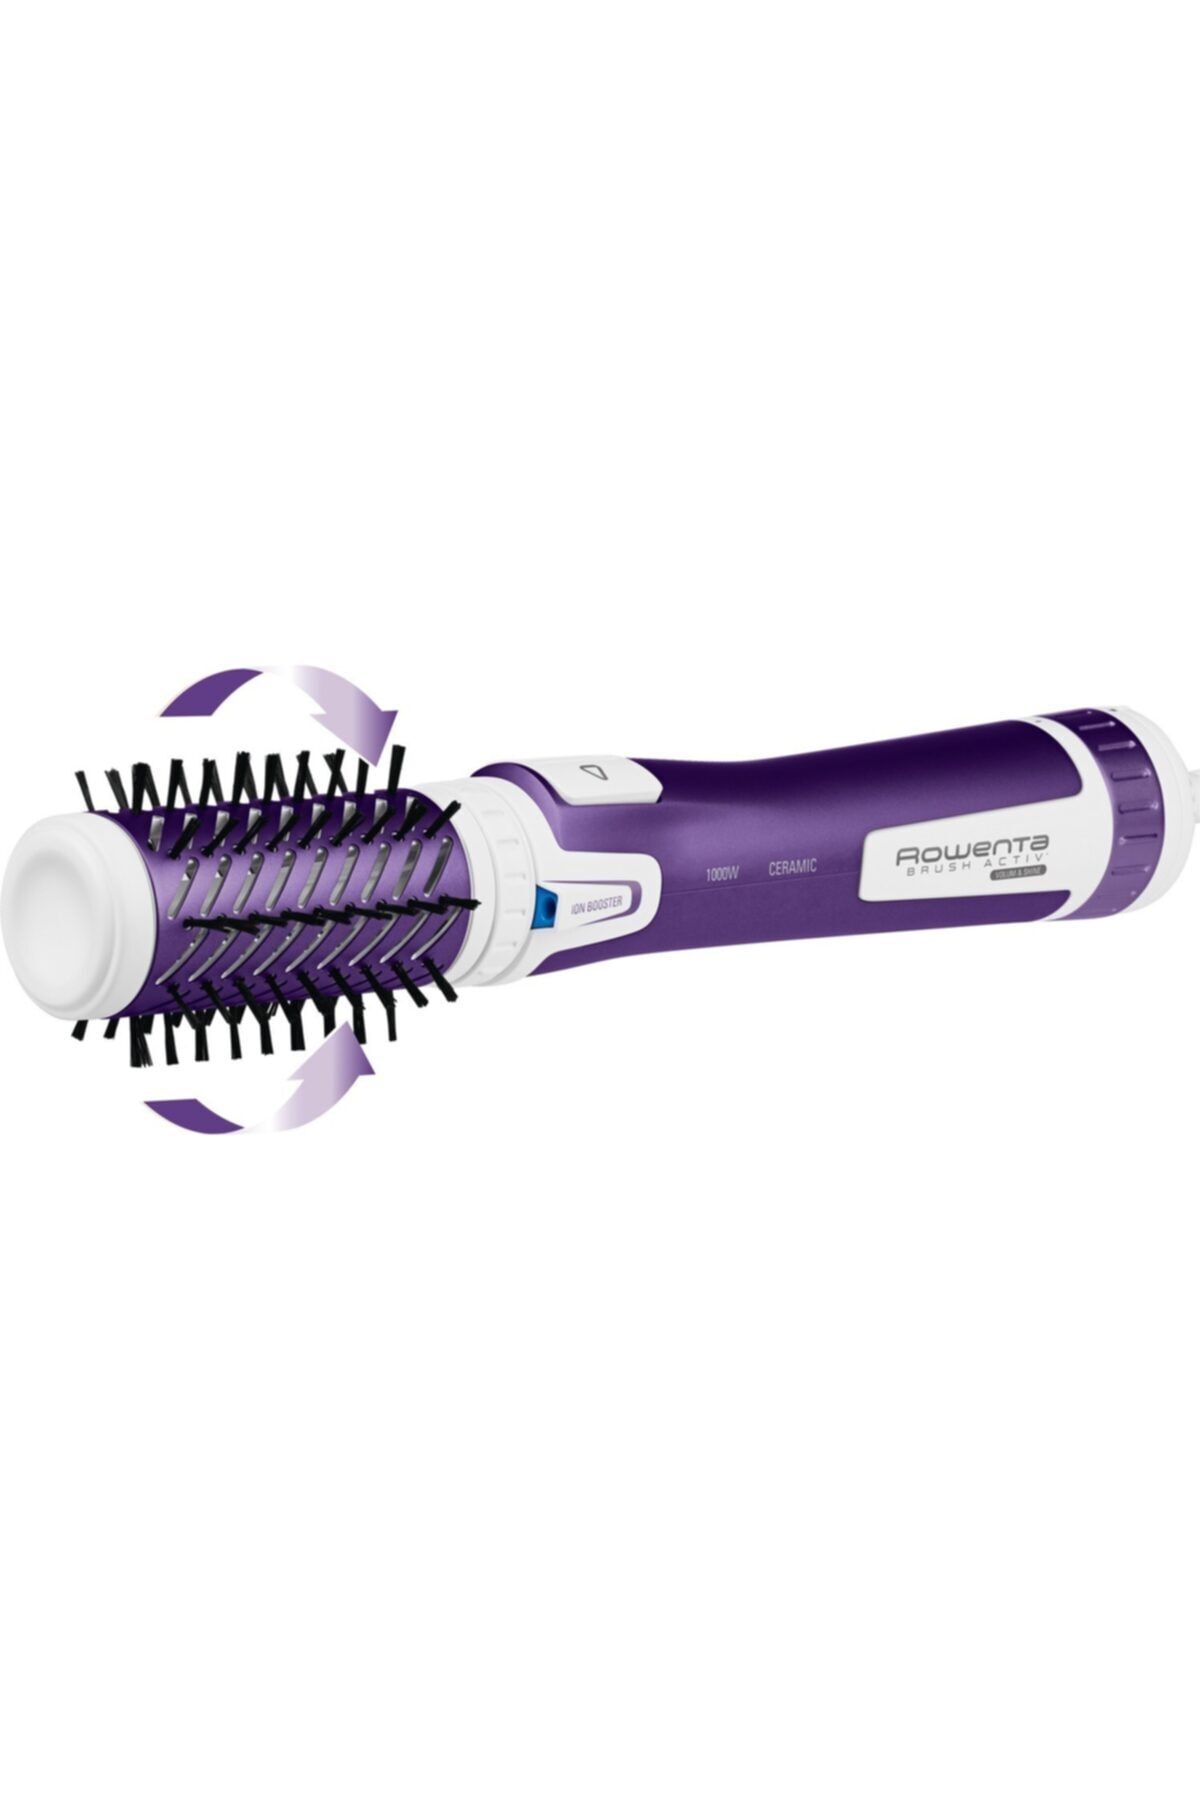 Rowenta Cf9530 Brush Activ Saç Fırçası Ve Saç Şekillendirici [ Mor ] - 1830006275